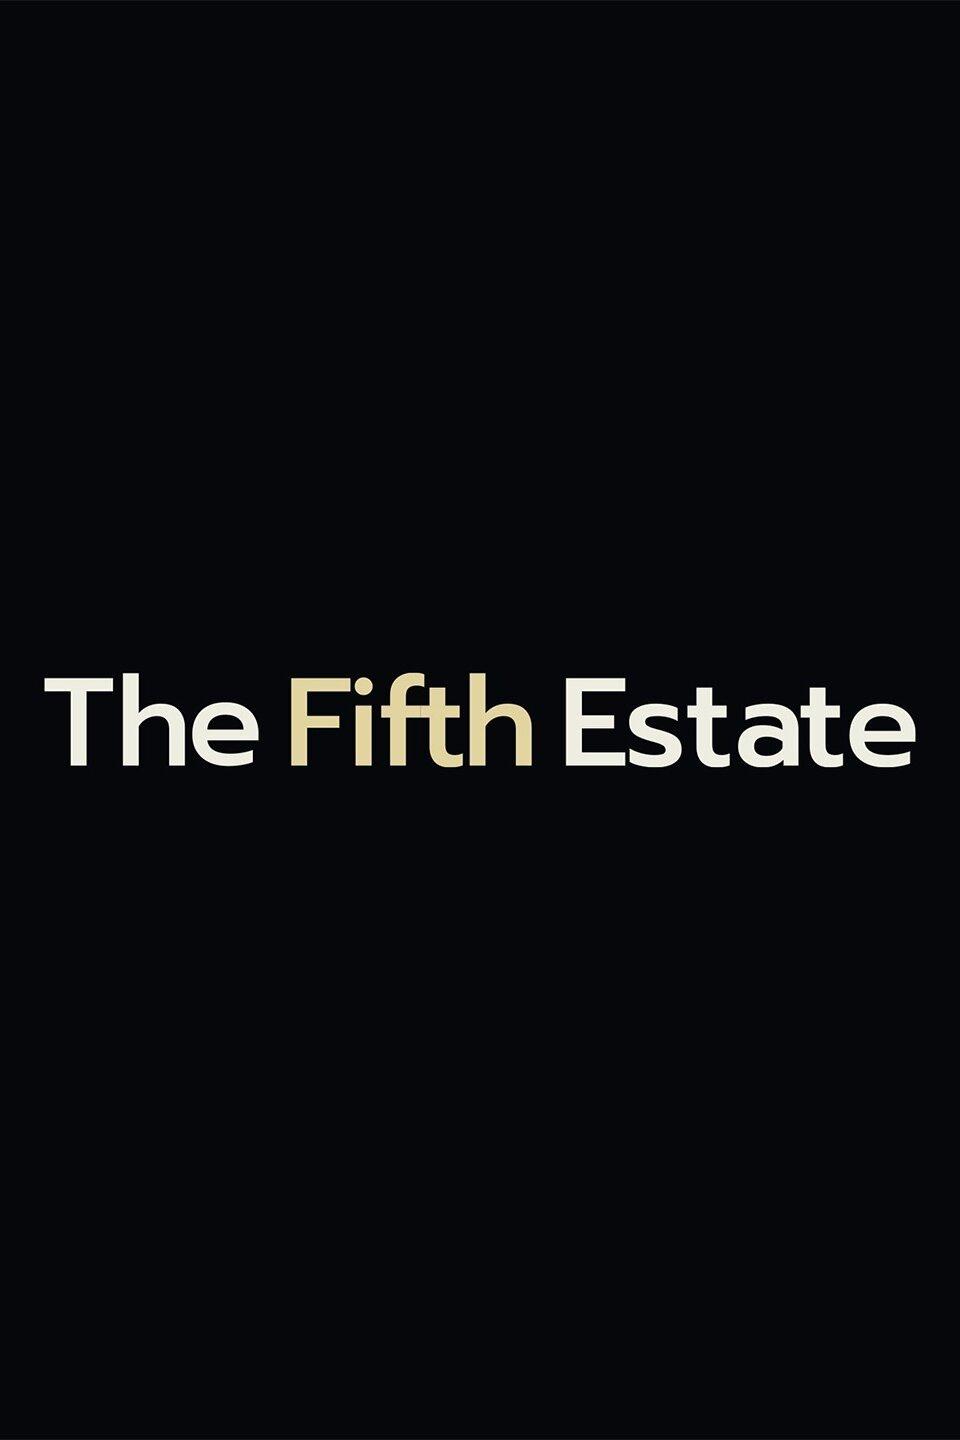 The Fifth Estate S49E10 [1080p] (x265) 3ee26b0e63251b8c18184c8425ae5347